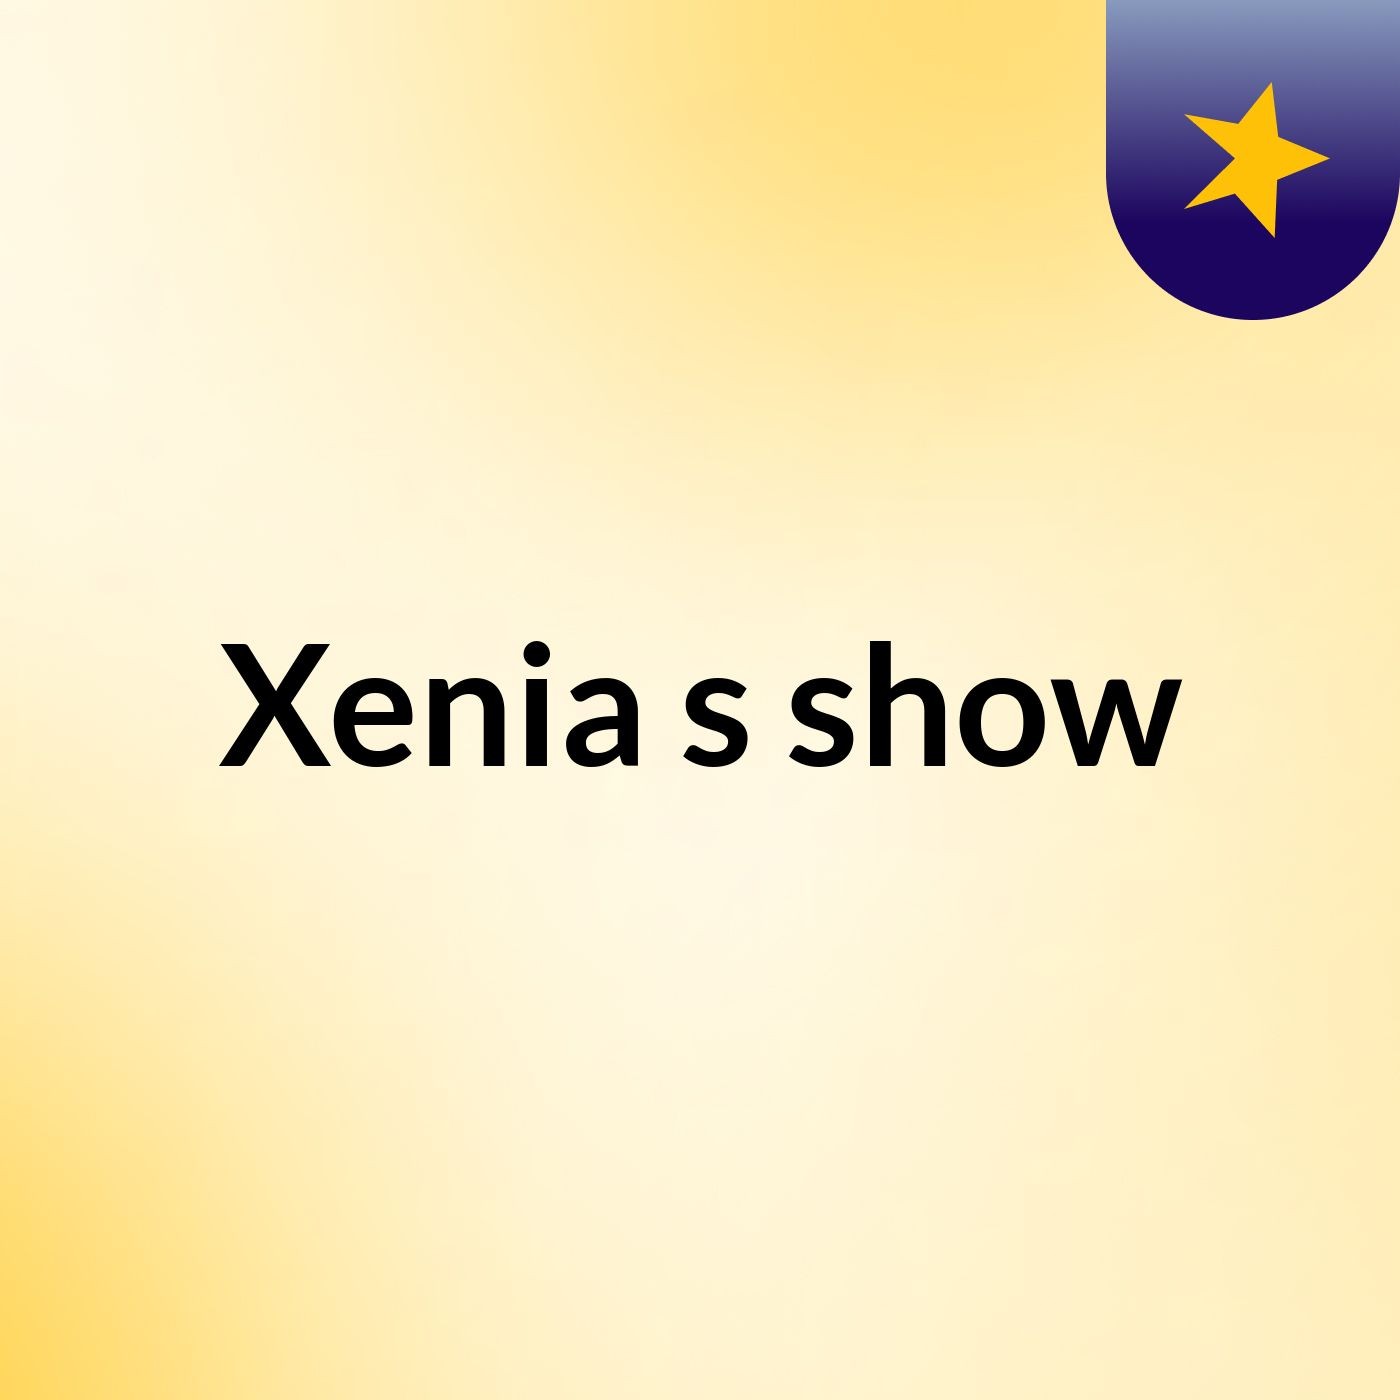 Xenia's show